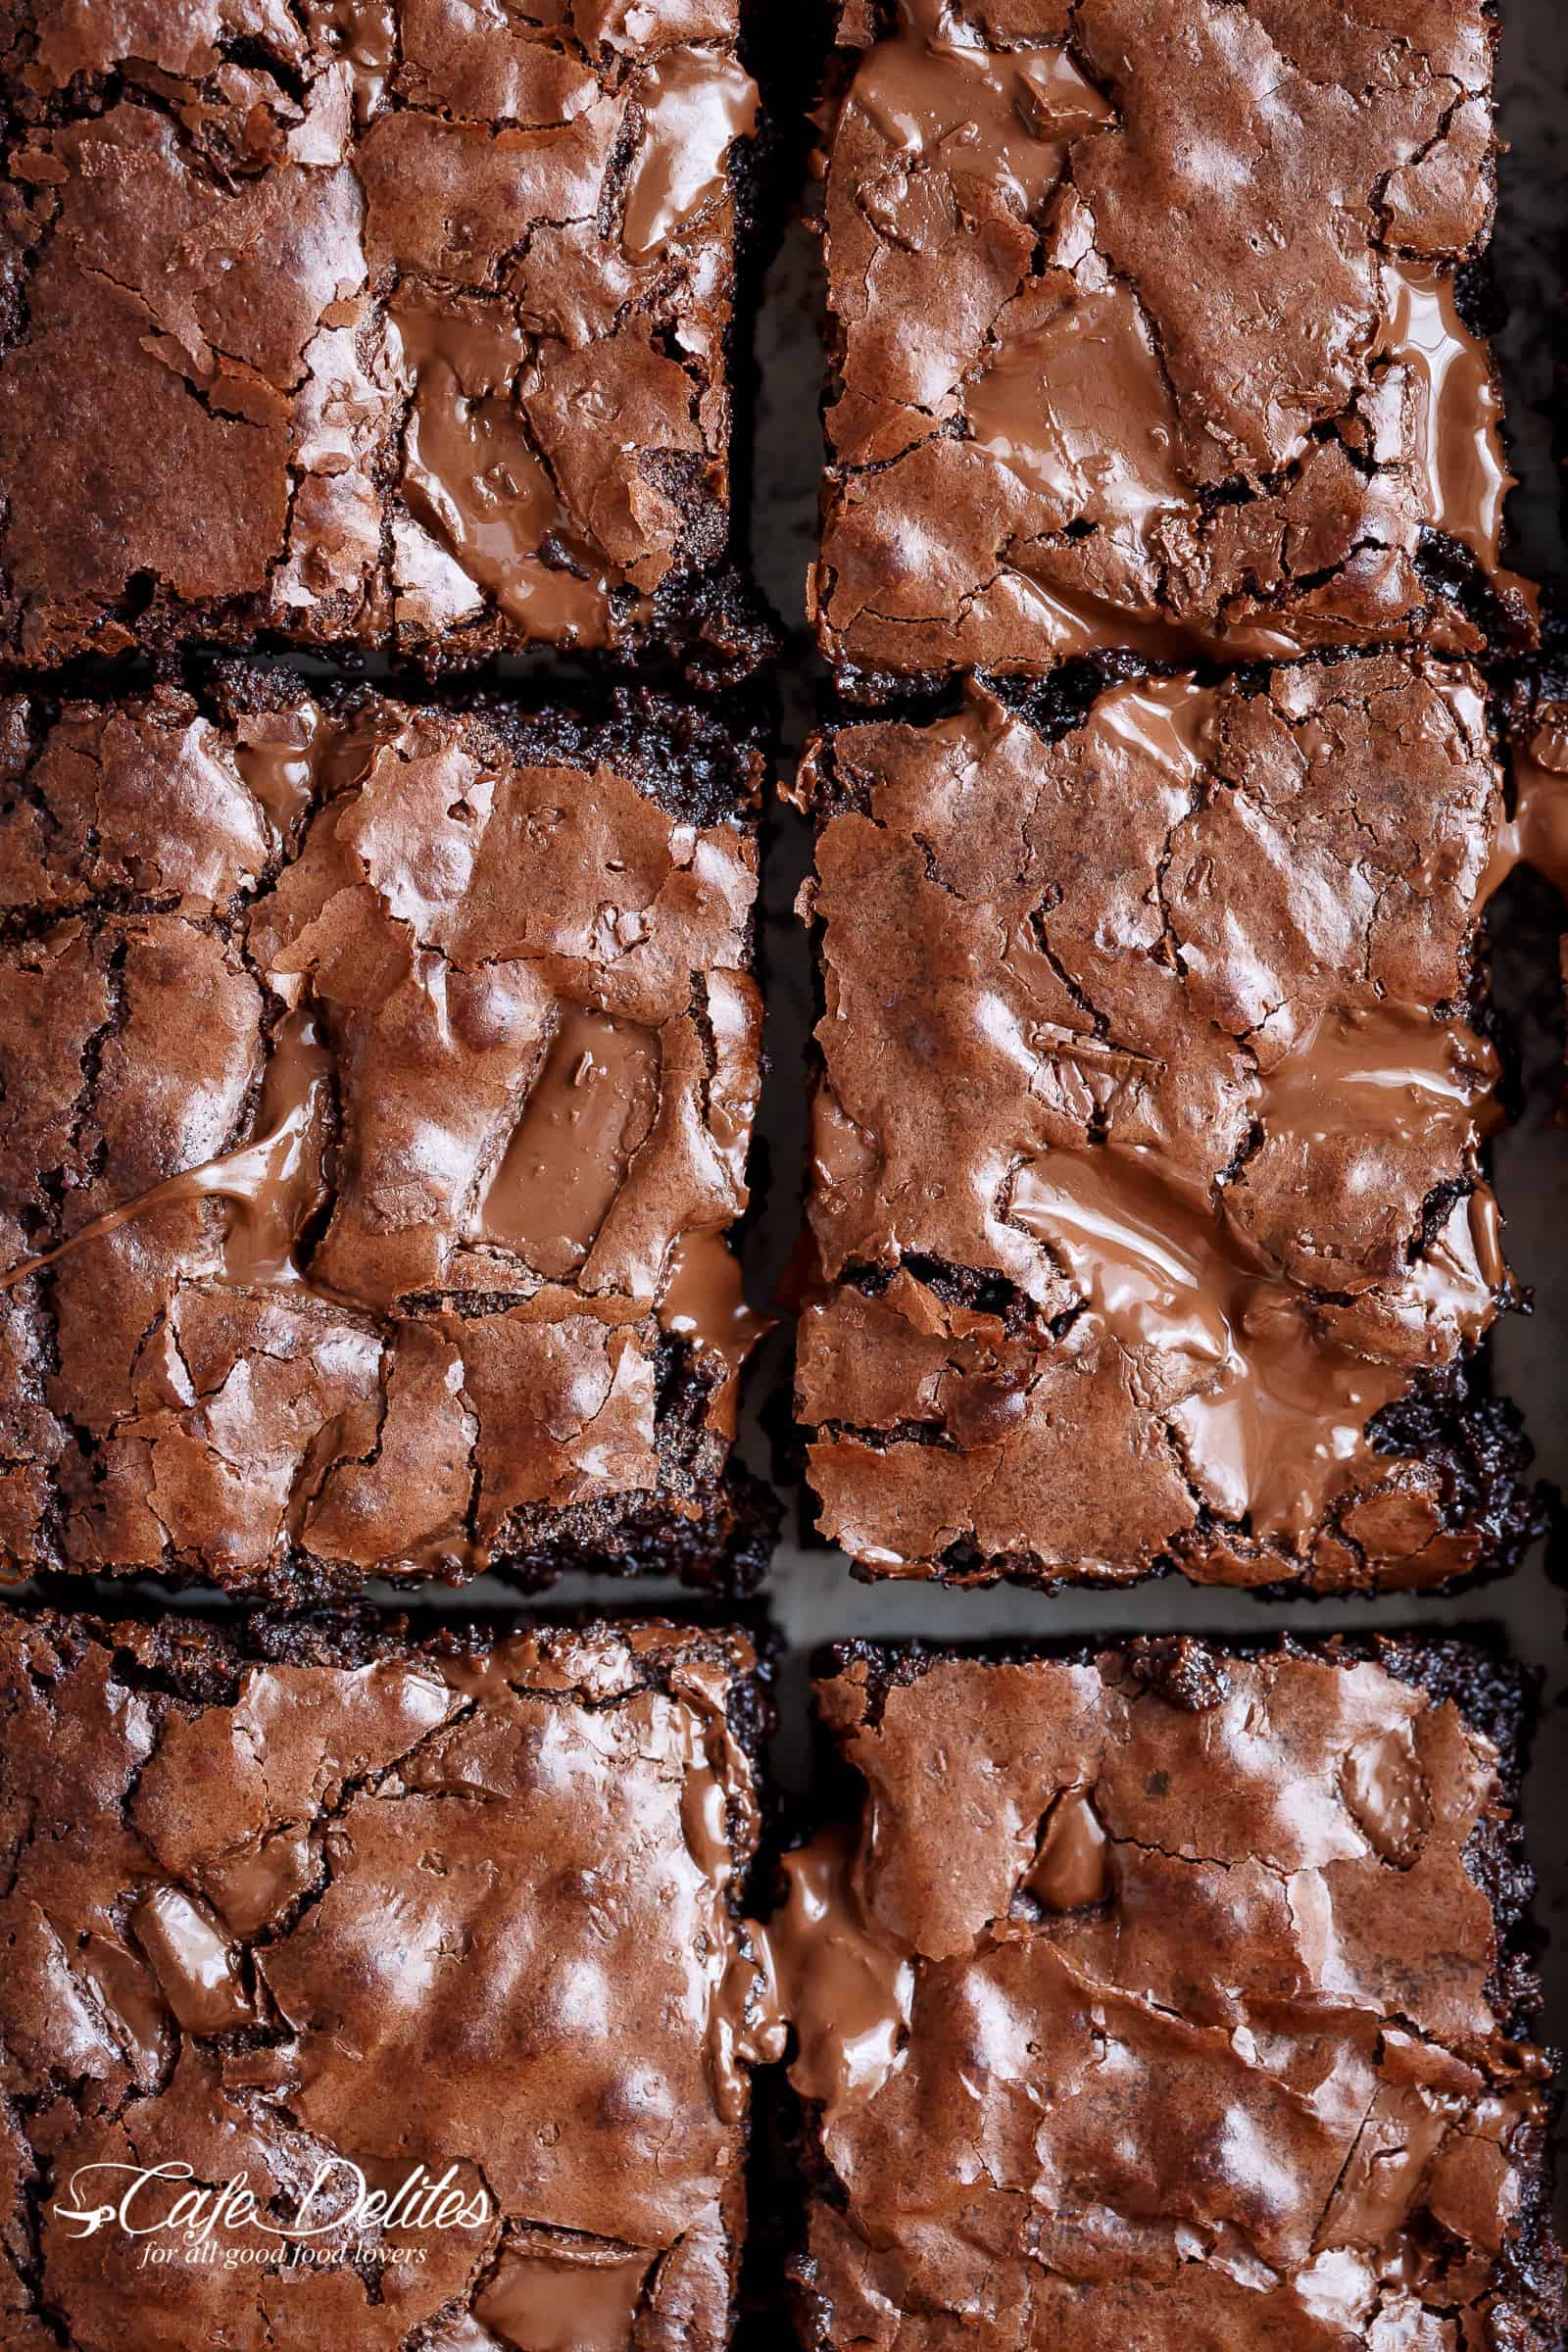 New 18 Portions Brownies Maker Bake Tray Tin Pan Set Ultimate Cake Baking Kit 